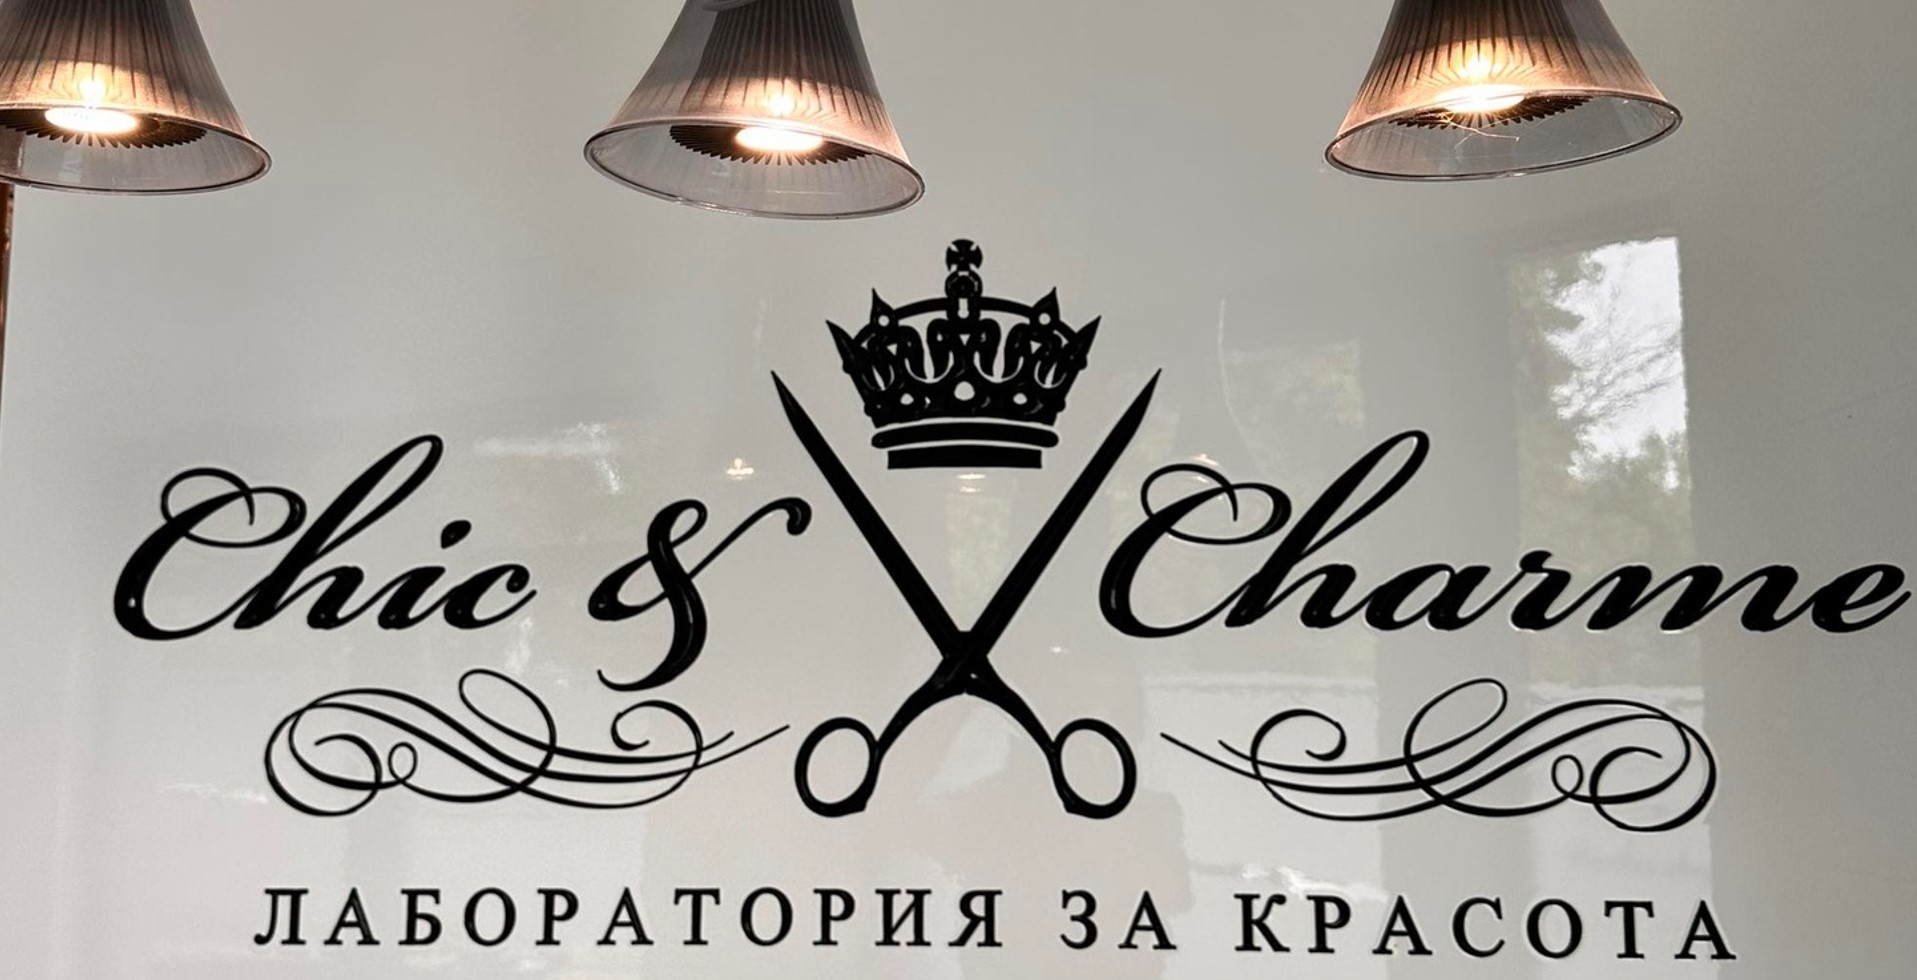 Chick and Charme - Лаборатория за красота София 29102